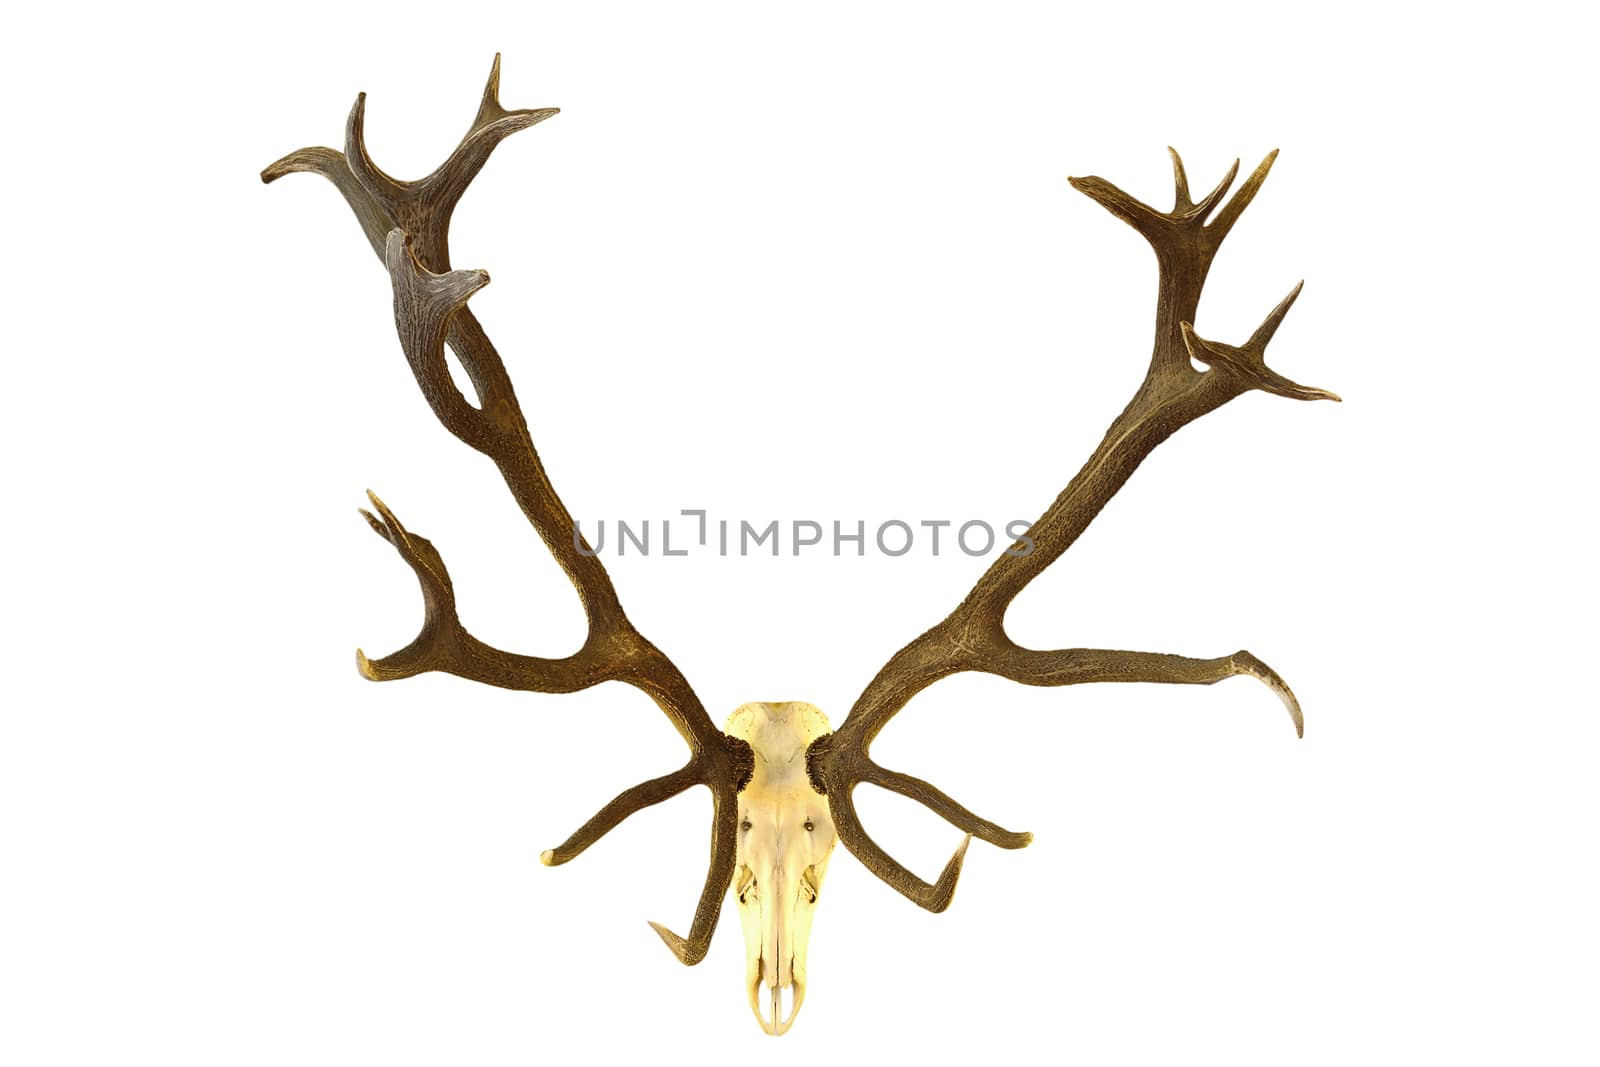 huge red deer buck hunting trophy, isolation of skull with large antlers over white background ( Cervus elaphus )